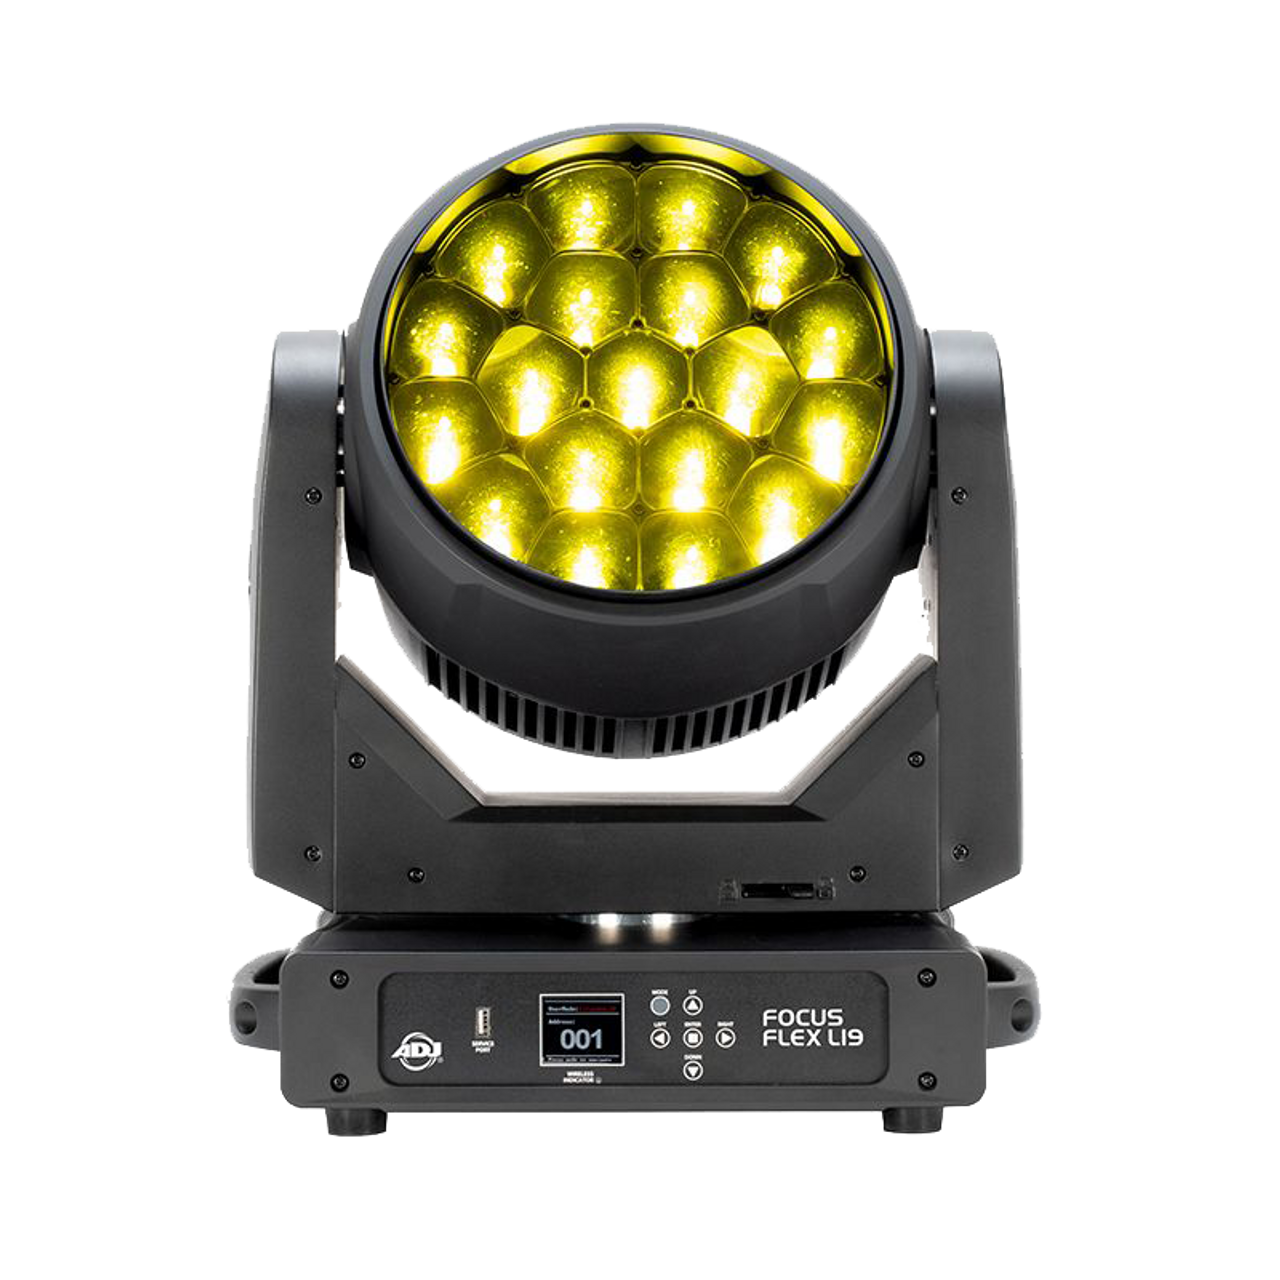 ADJ Focus Flex L19 40-Watt RGBL LED Wash / Beam Moving Head Light